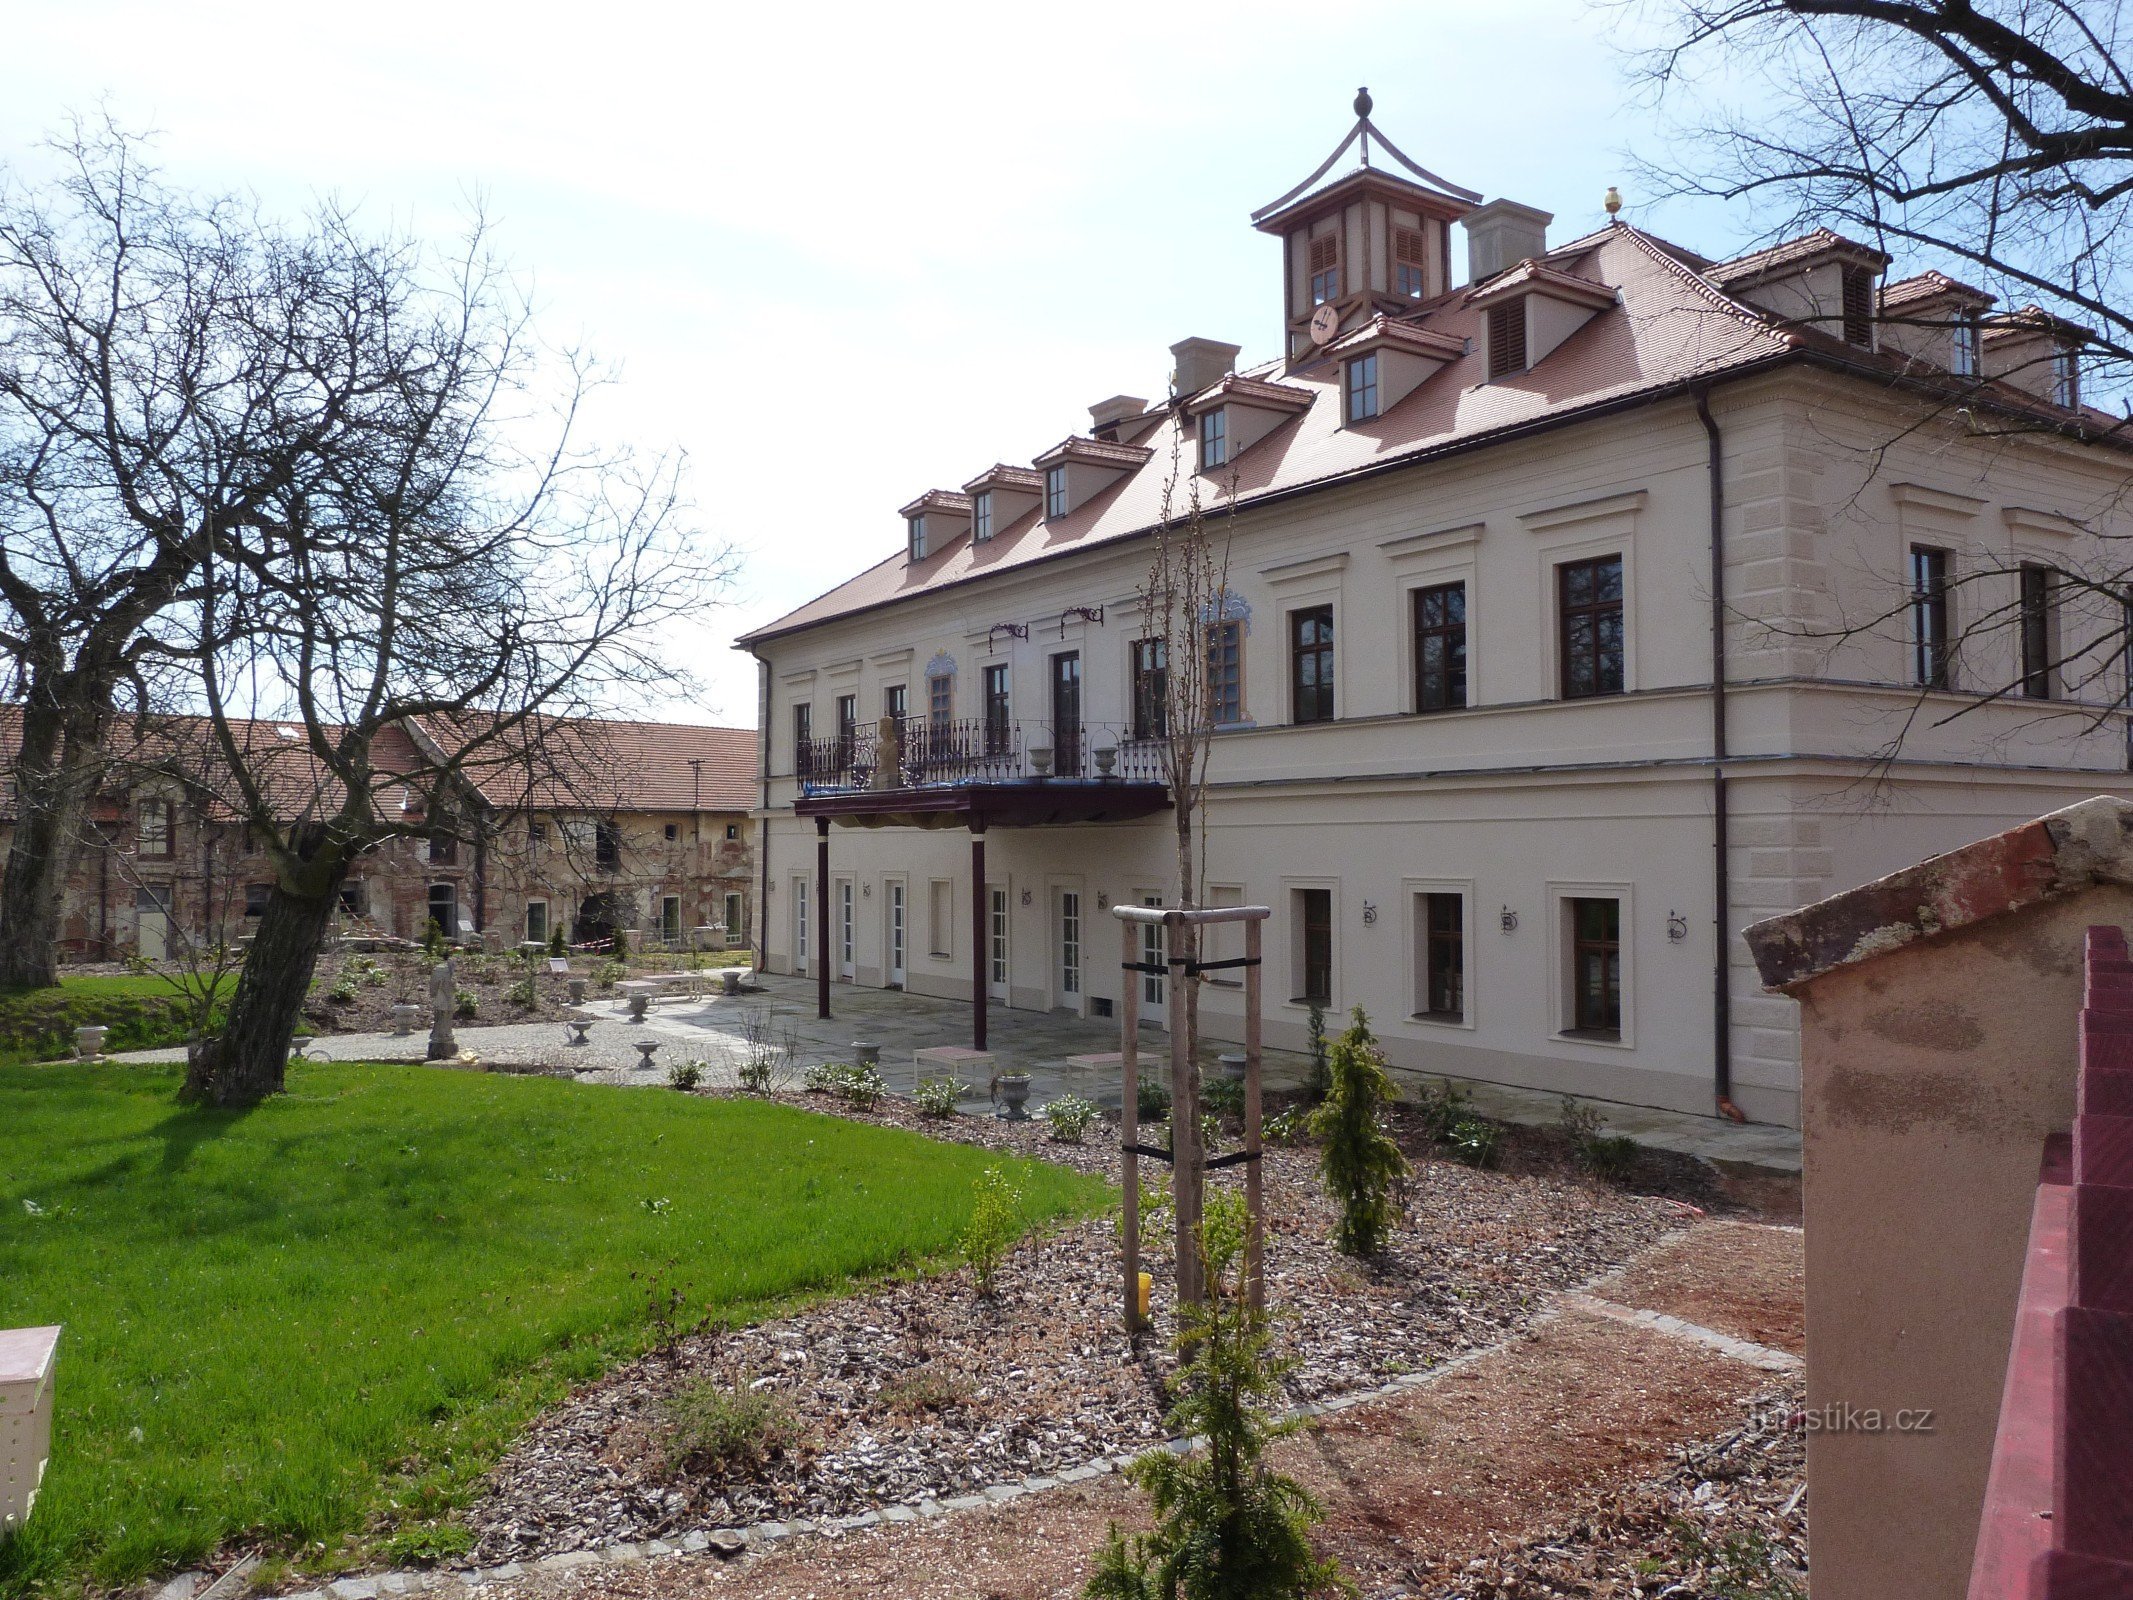 Castelo Rochlov